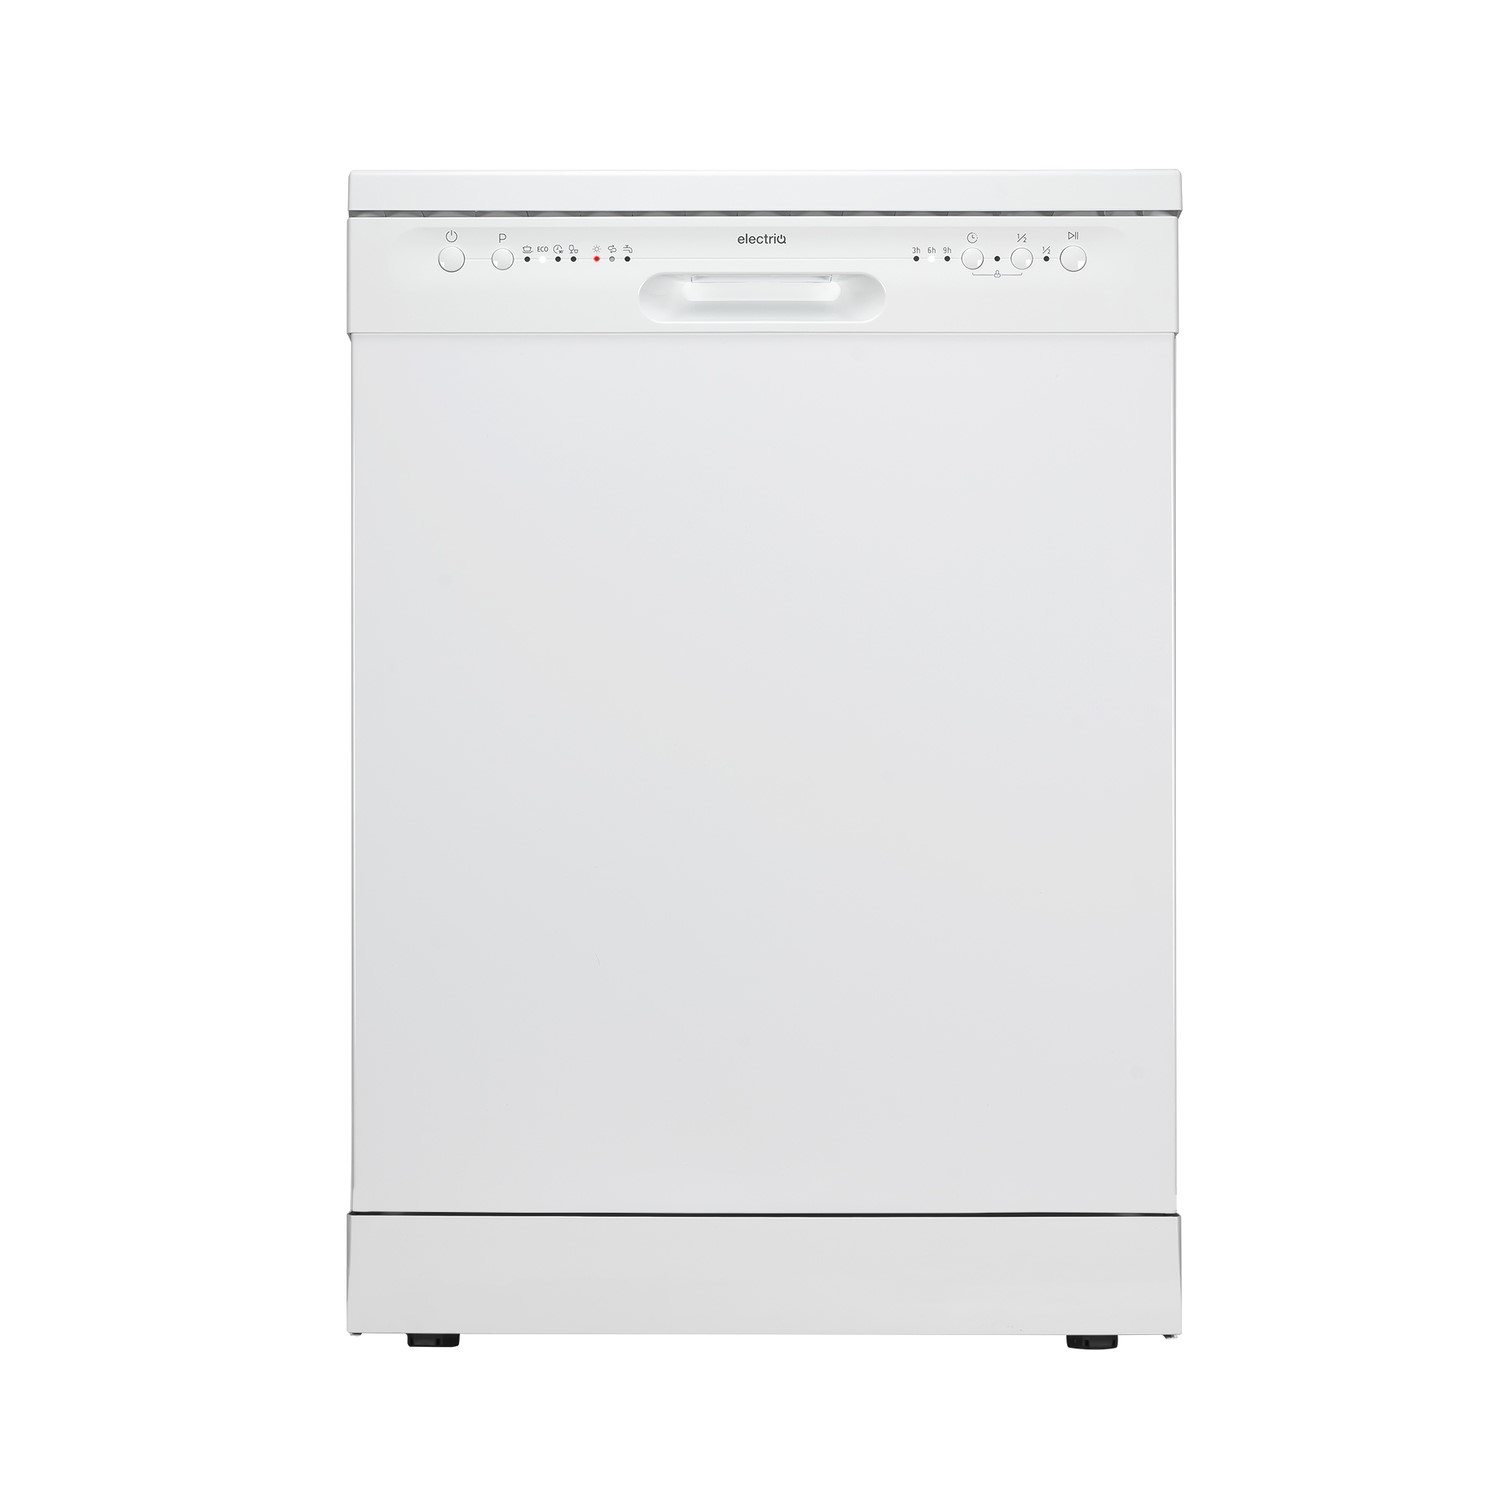 electriQ Freestanding Dishwasher - White